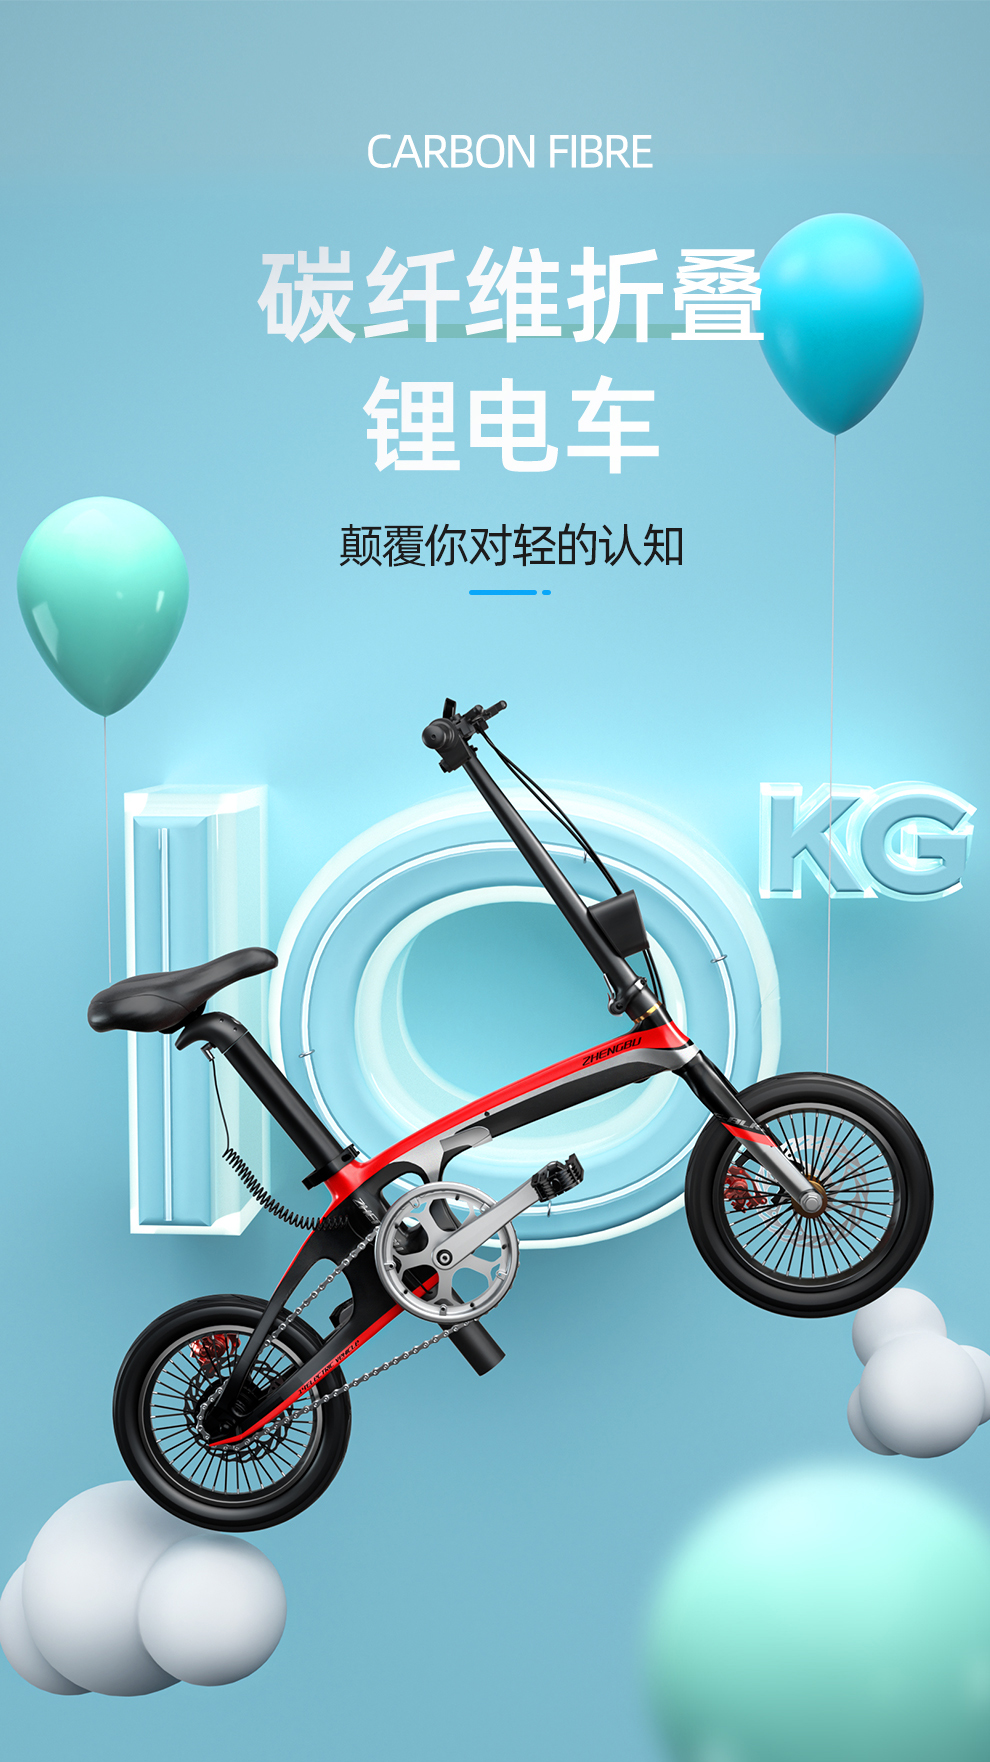 正步(zb)碳钎维折叠电动自行车轻便携电瓶代步车迷你小型代驾电动车